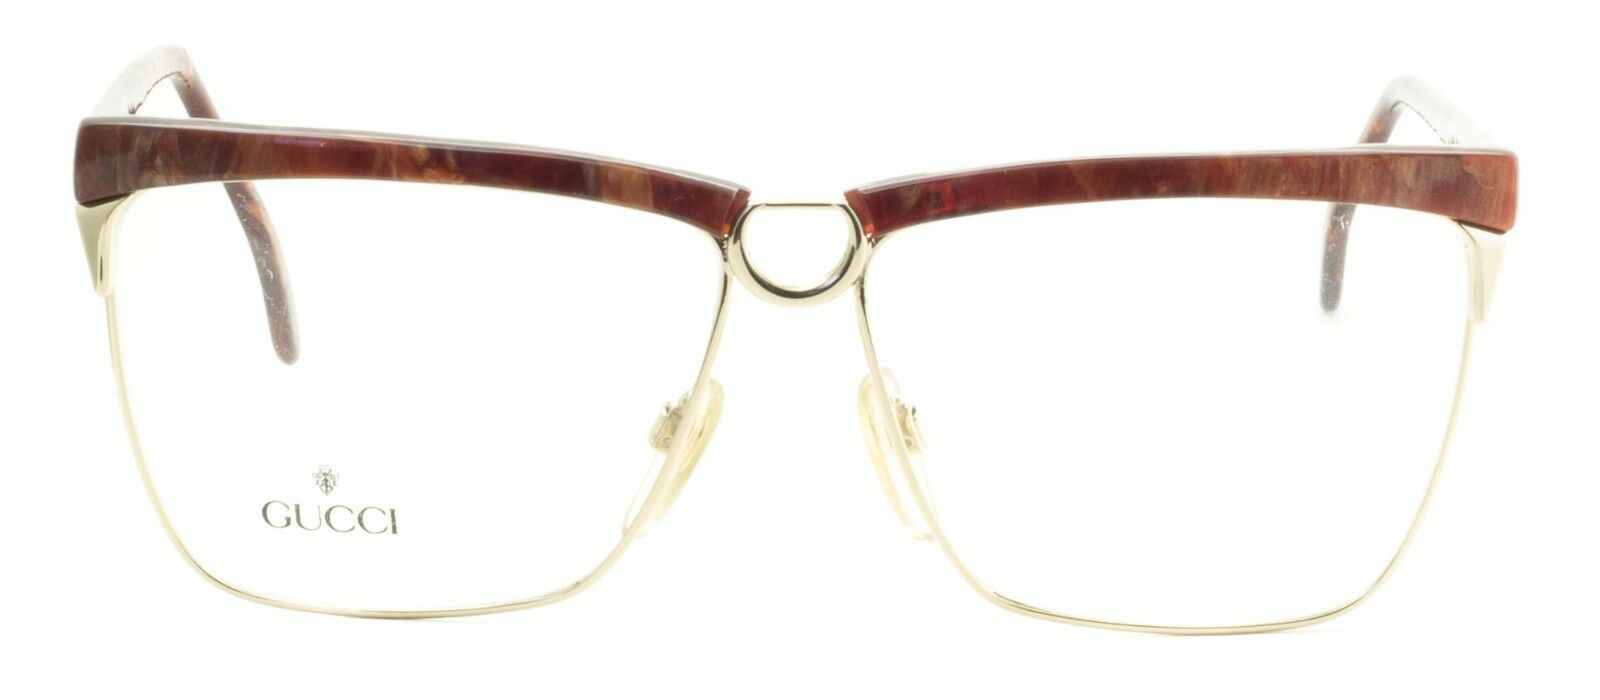 GUCCI GG 2301 50U Eyewear FRAMES NEW Glasses RX Optical Eyeglasses ITALY - BNIB